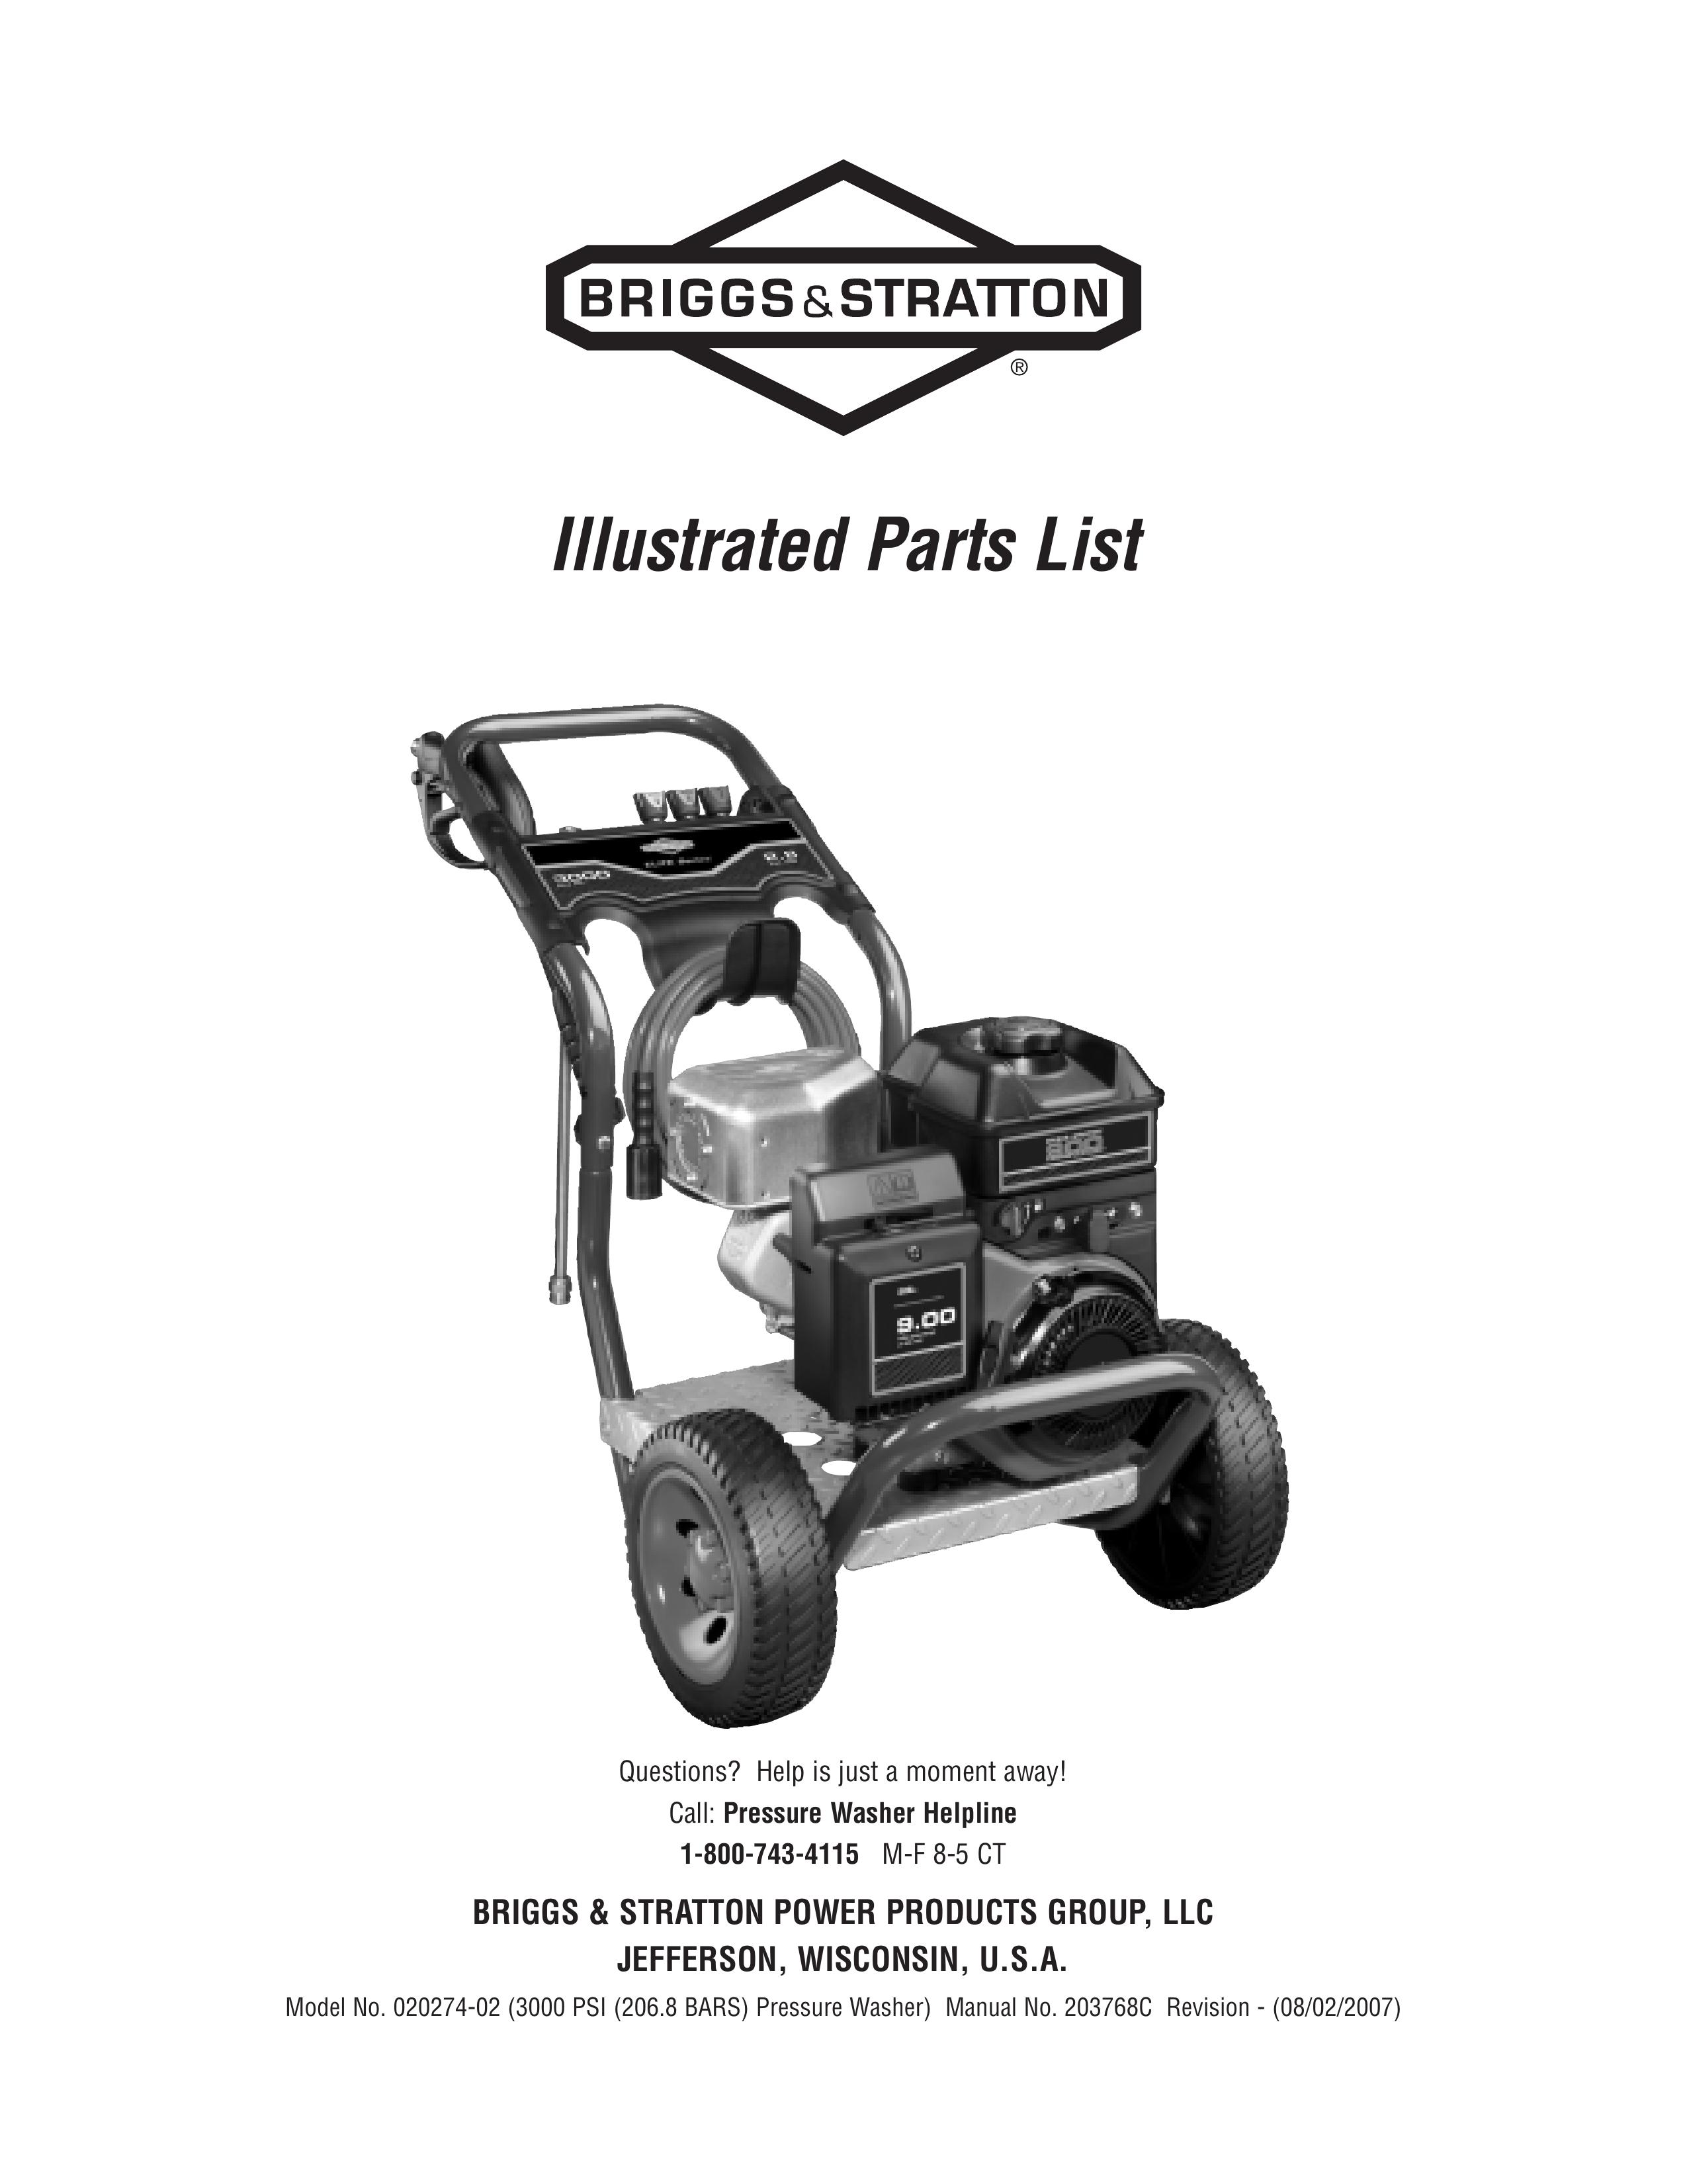 Briggs & Stratton 020274-02 Pressure Washer User Manual